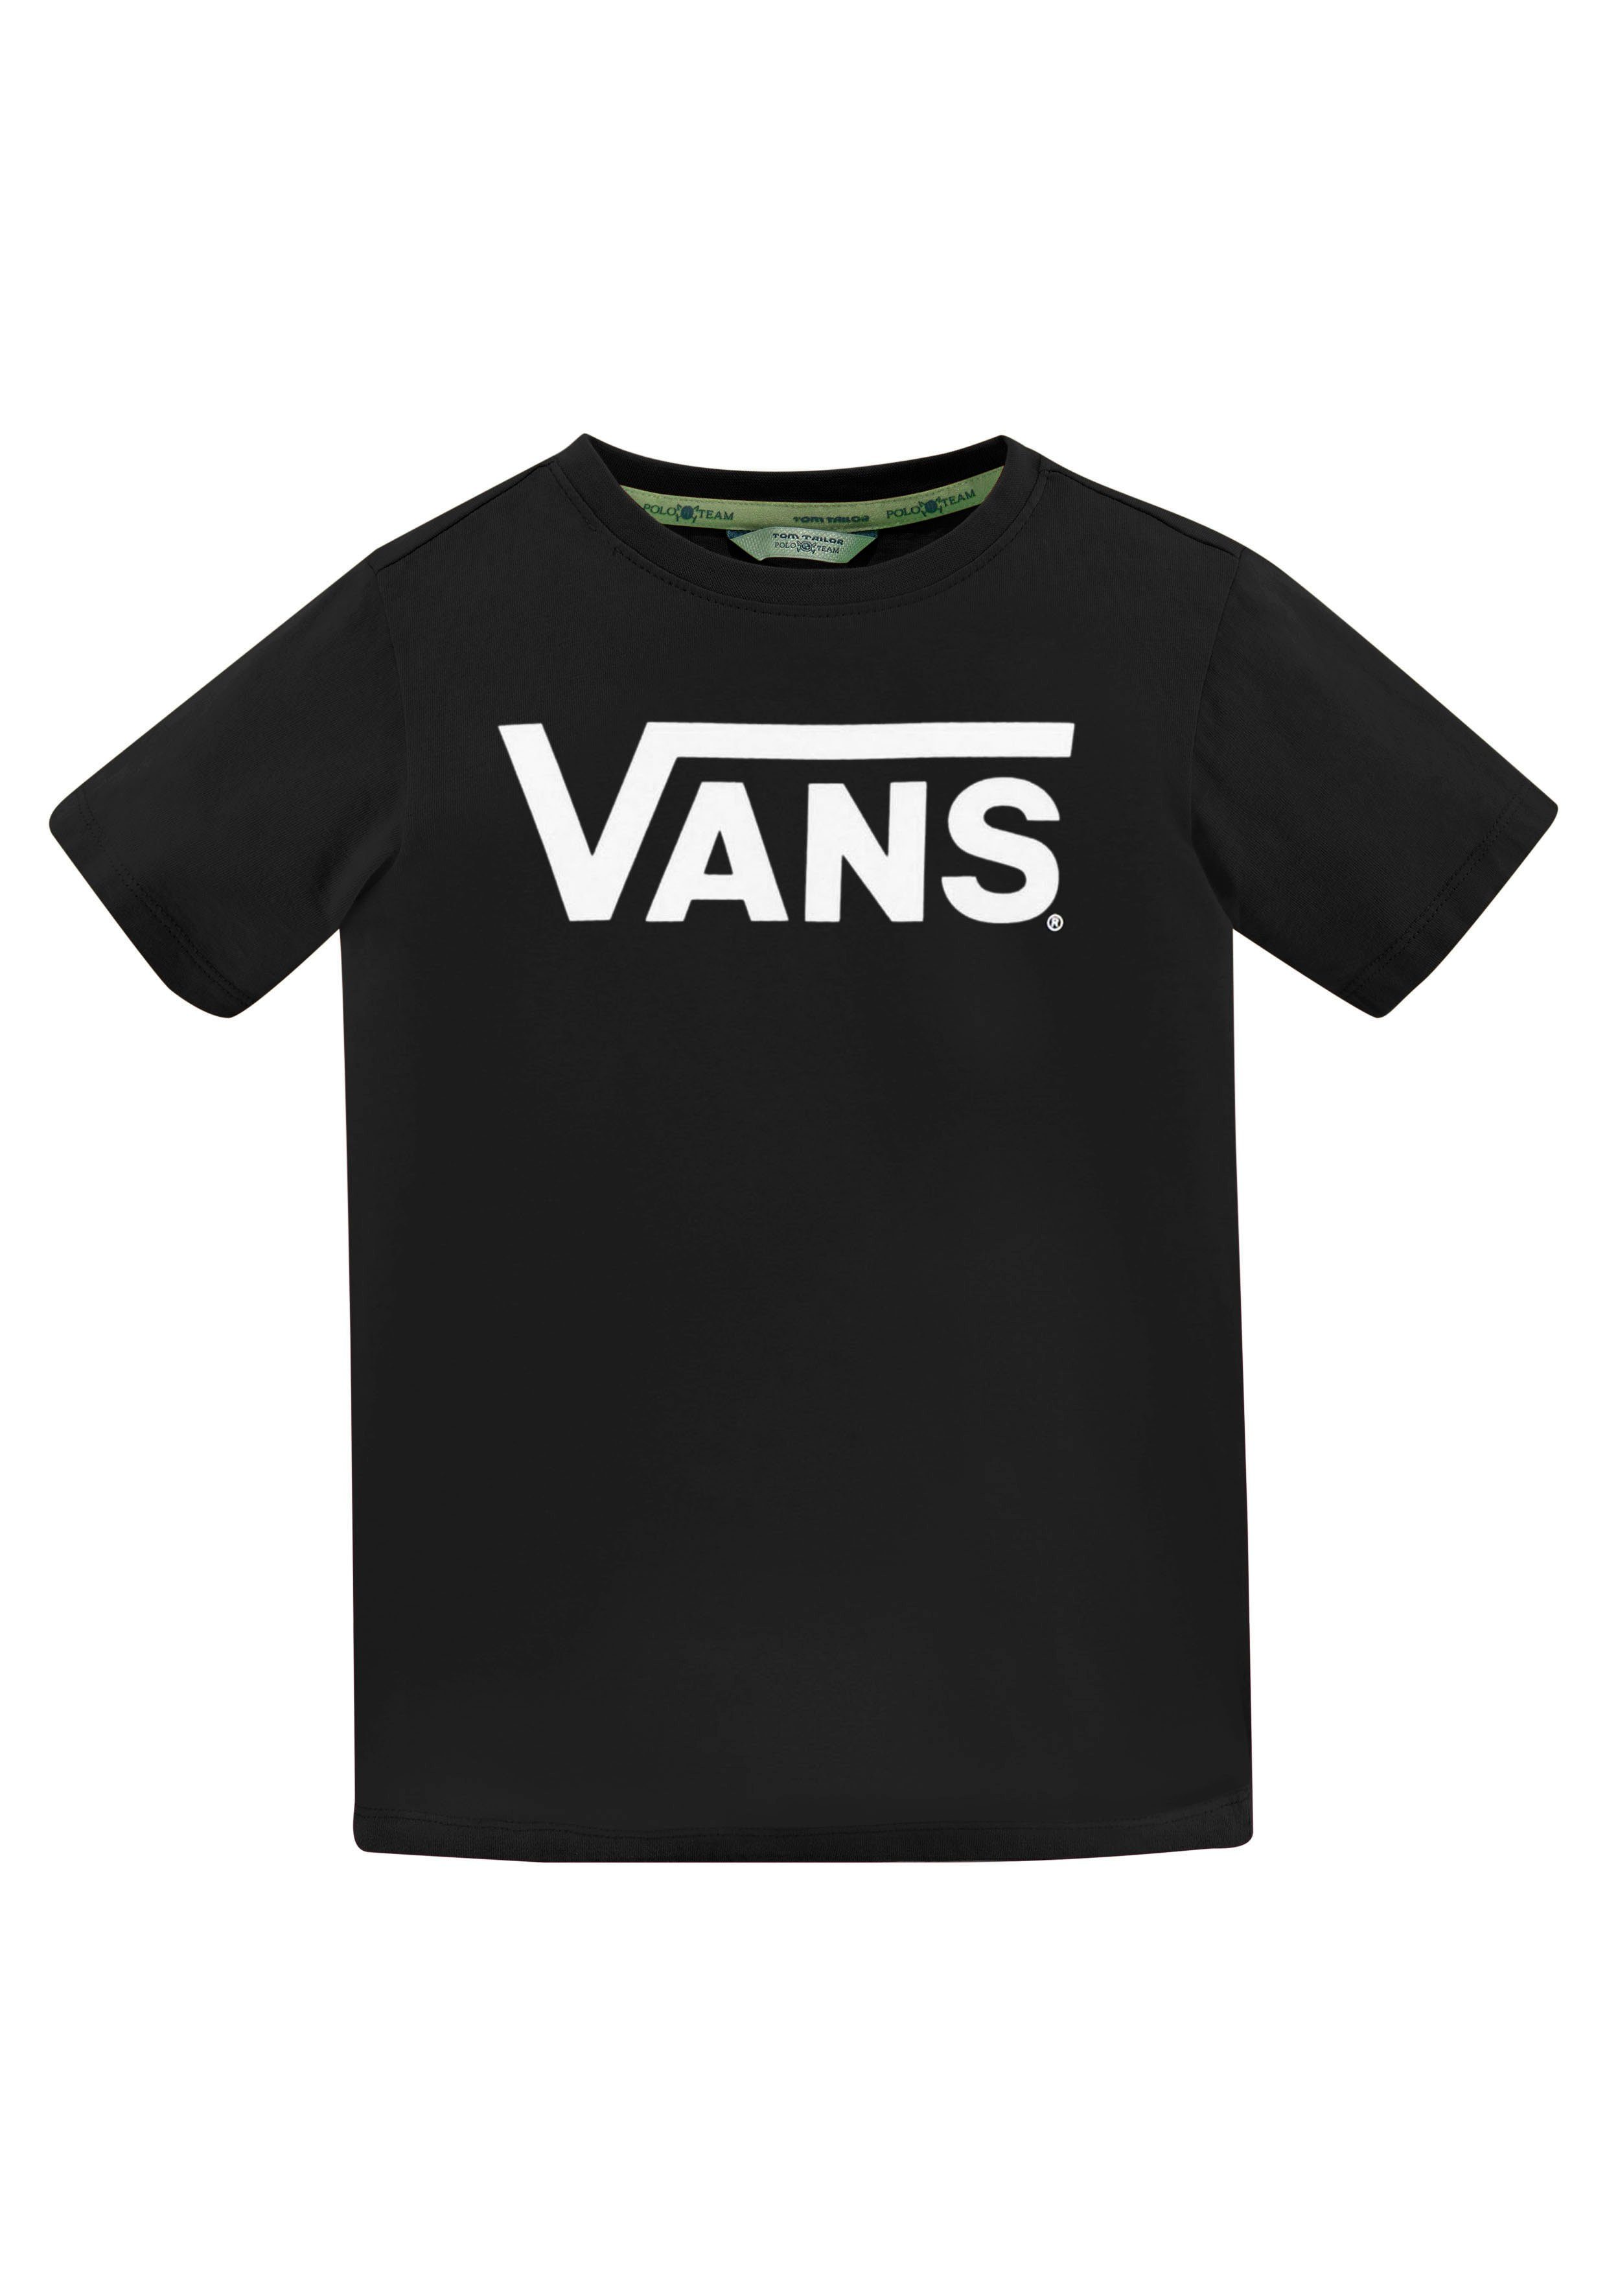 Vans T-Shirt VANS CLASSIC schwarz KIDS